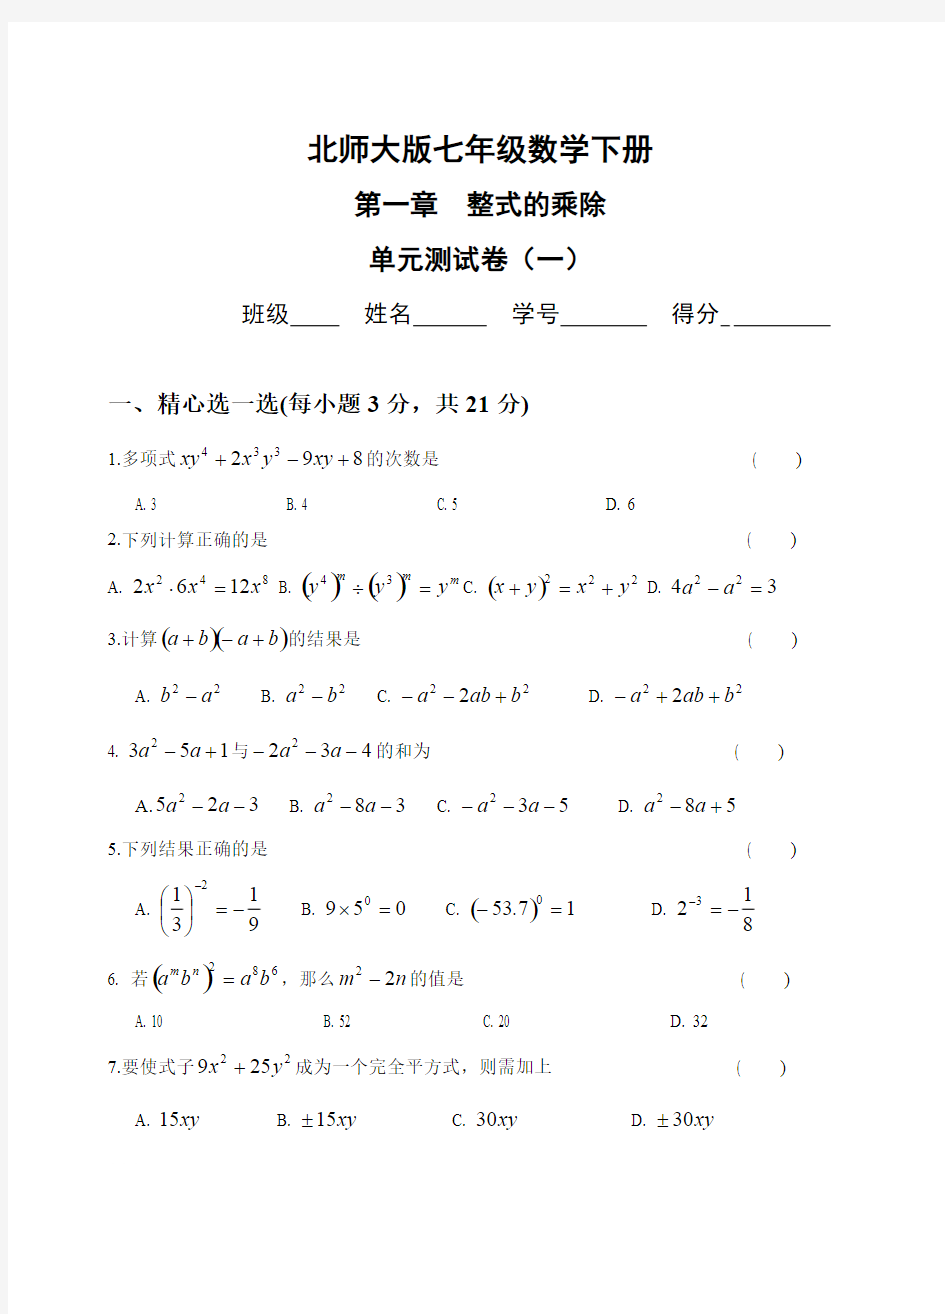 (完整版)整式的乘除测试题(3套)及答案